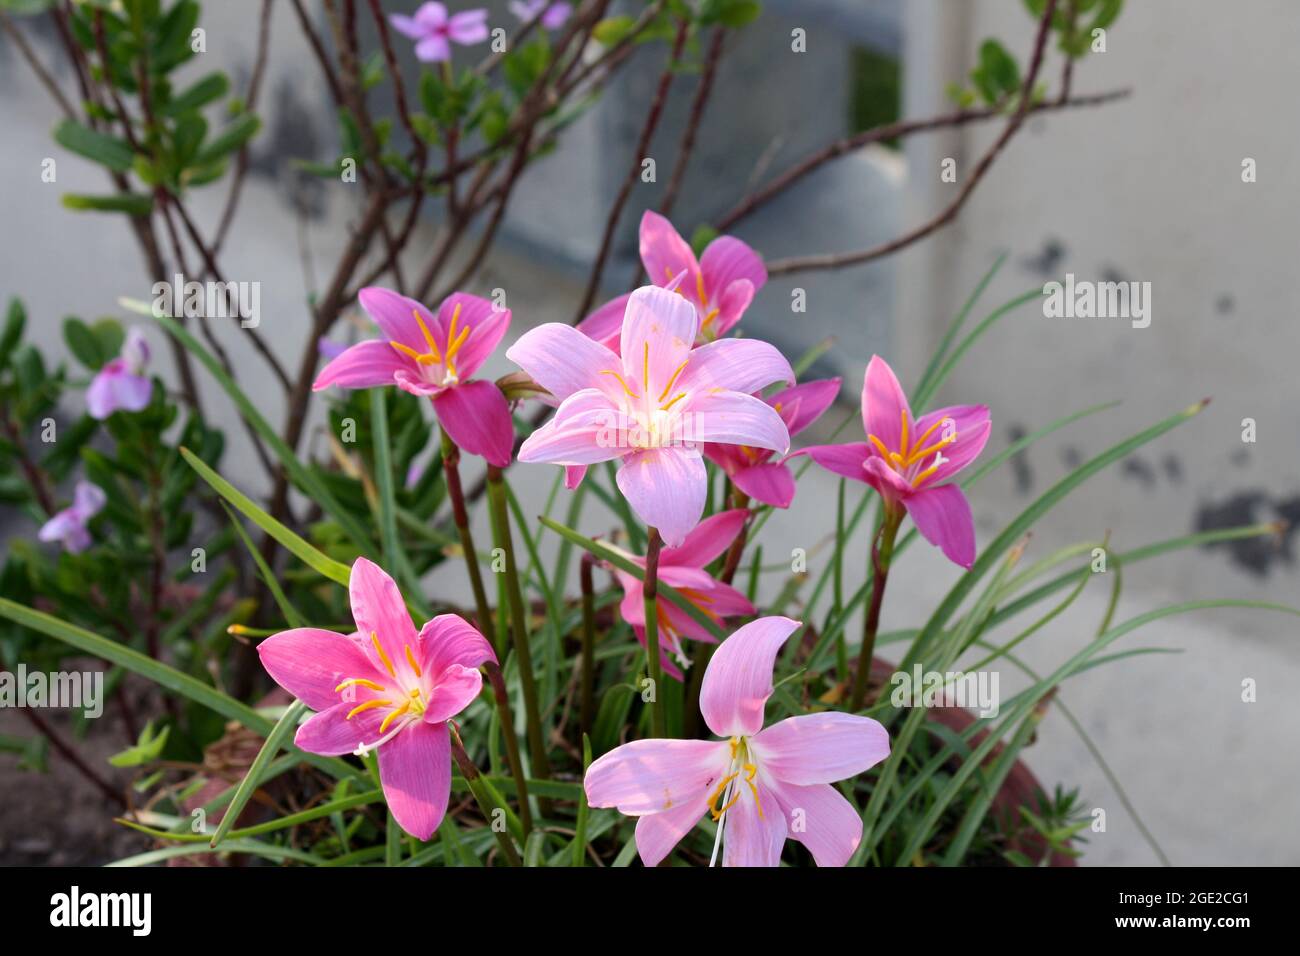 Rosa Regenlilien - beide Arten (Zphyranthes rosea) hellrosa und (Zphyranthes carinata) dunkelrosa sind hier zu sehen Stockfoto